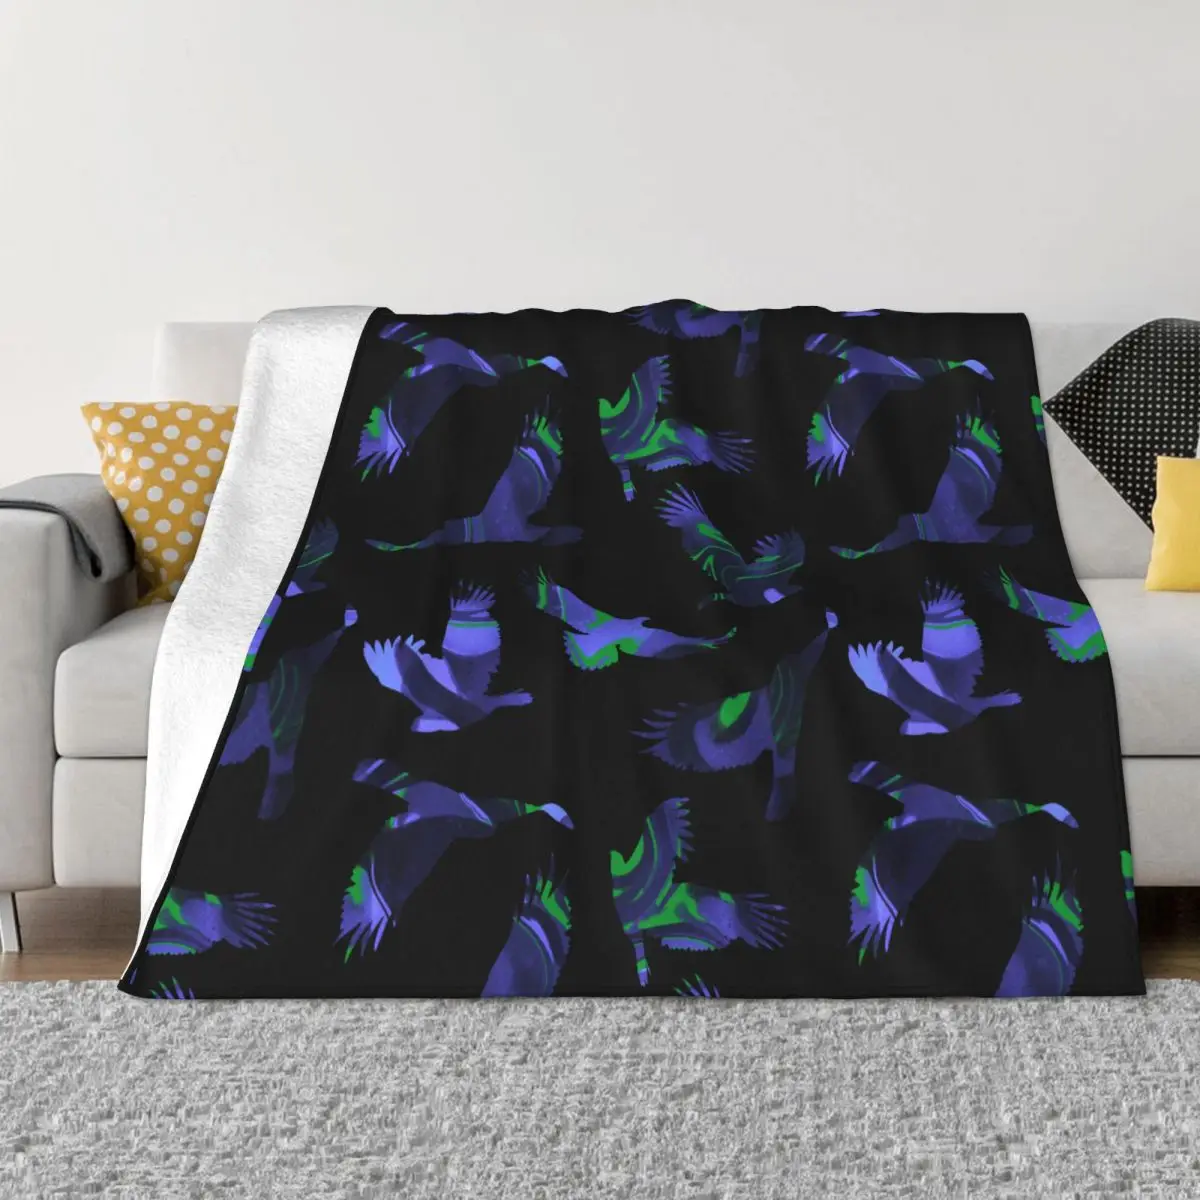 

Одеяло в виде летящего орла, флисовое текстильное украшение, многофункциональное супер теплое покрывало для кровати, дивана, плюшевое тонкое одеяло